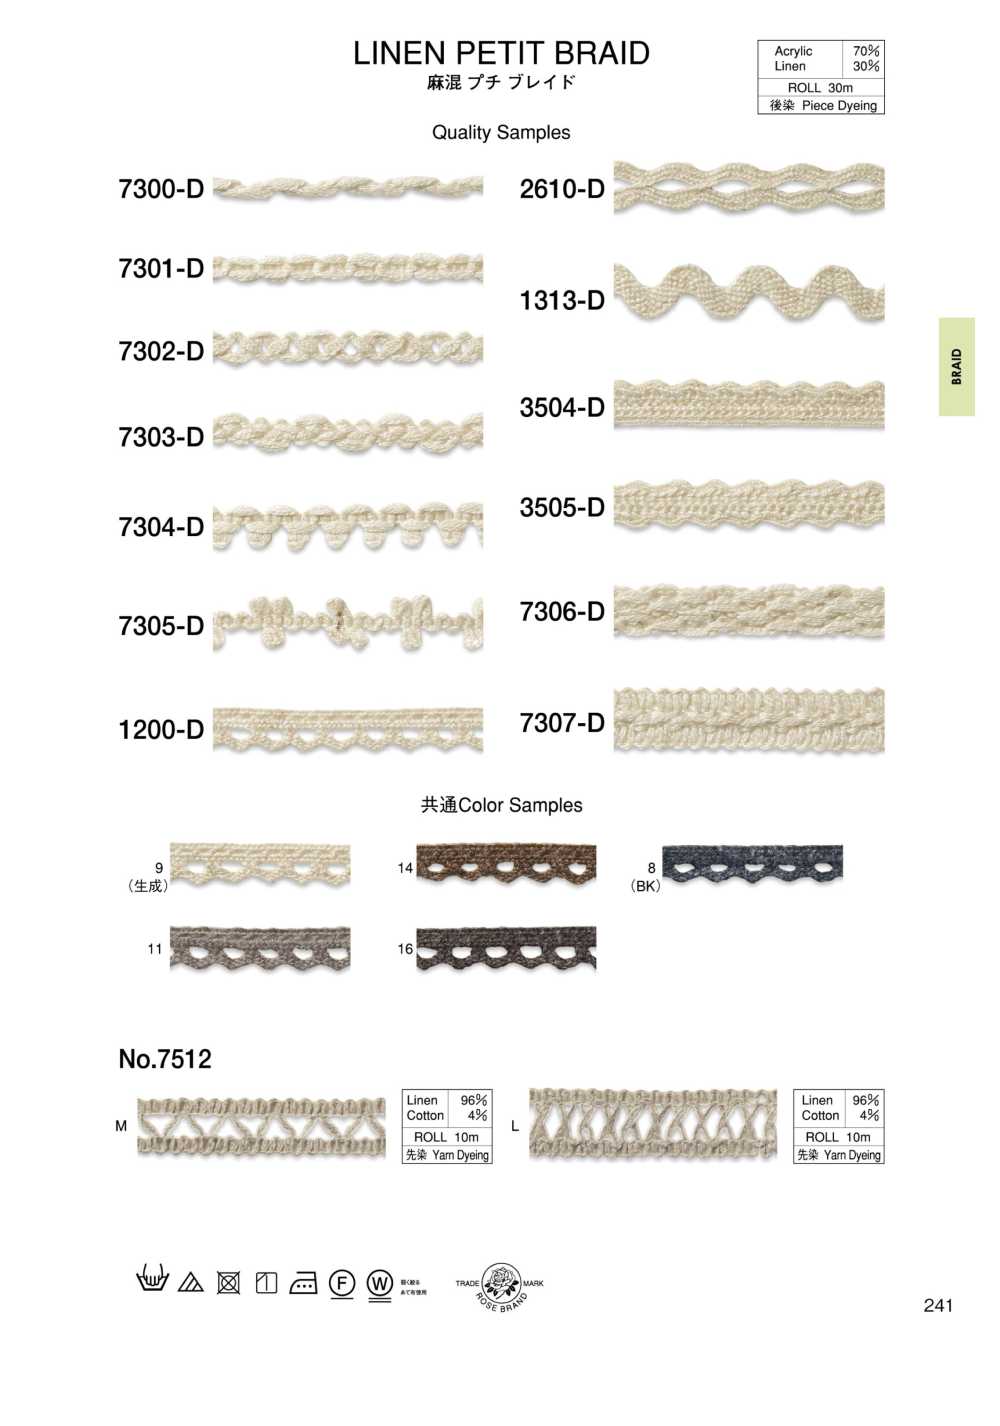 7306-D Linen Blend Petite Braid[Ribbon Tape Cord] ROSE BRAND (Marushin)